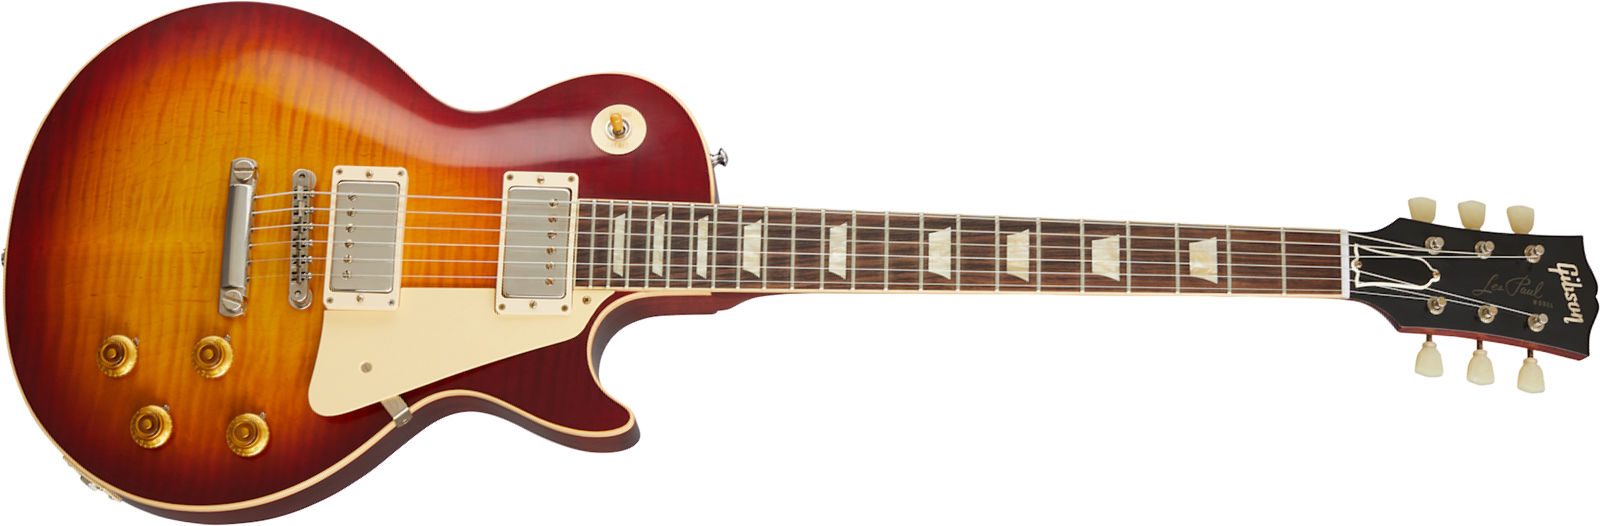 Gibson Custom Shop Les Paul Standard 1960 V1 60th Anniversary 2h Ht Rw - Vos Deep Cherry Sunburst - Guitare Électrique Single Cut - Main picture